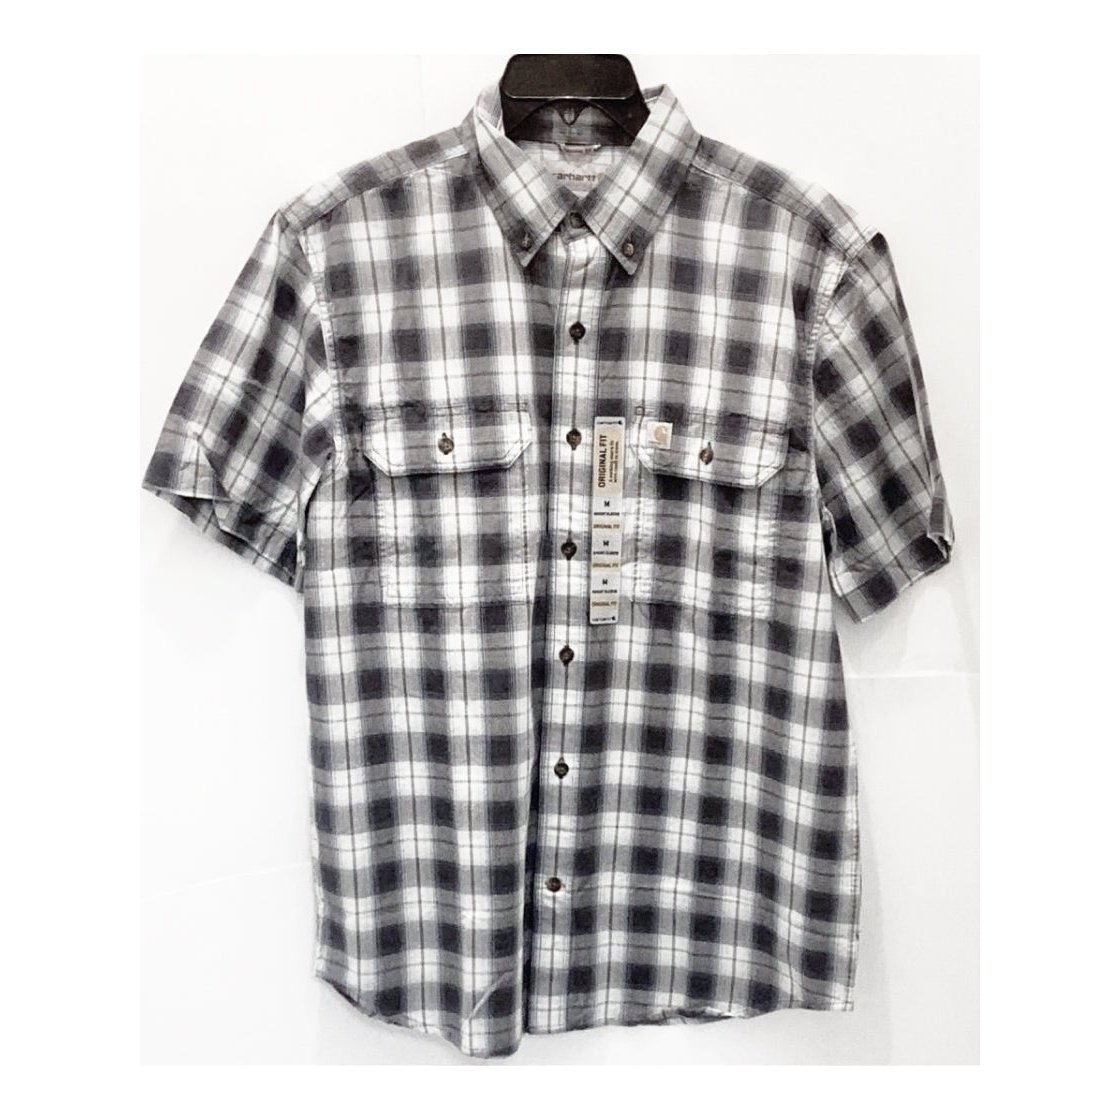 Carhartt Men’s Shirt Short Sleeve Button Down - Carhartt